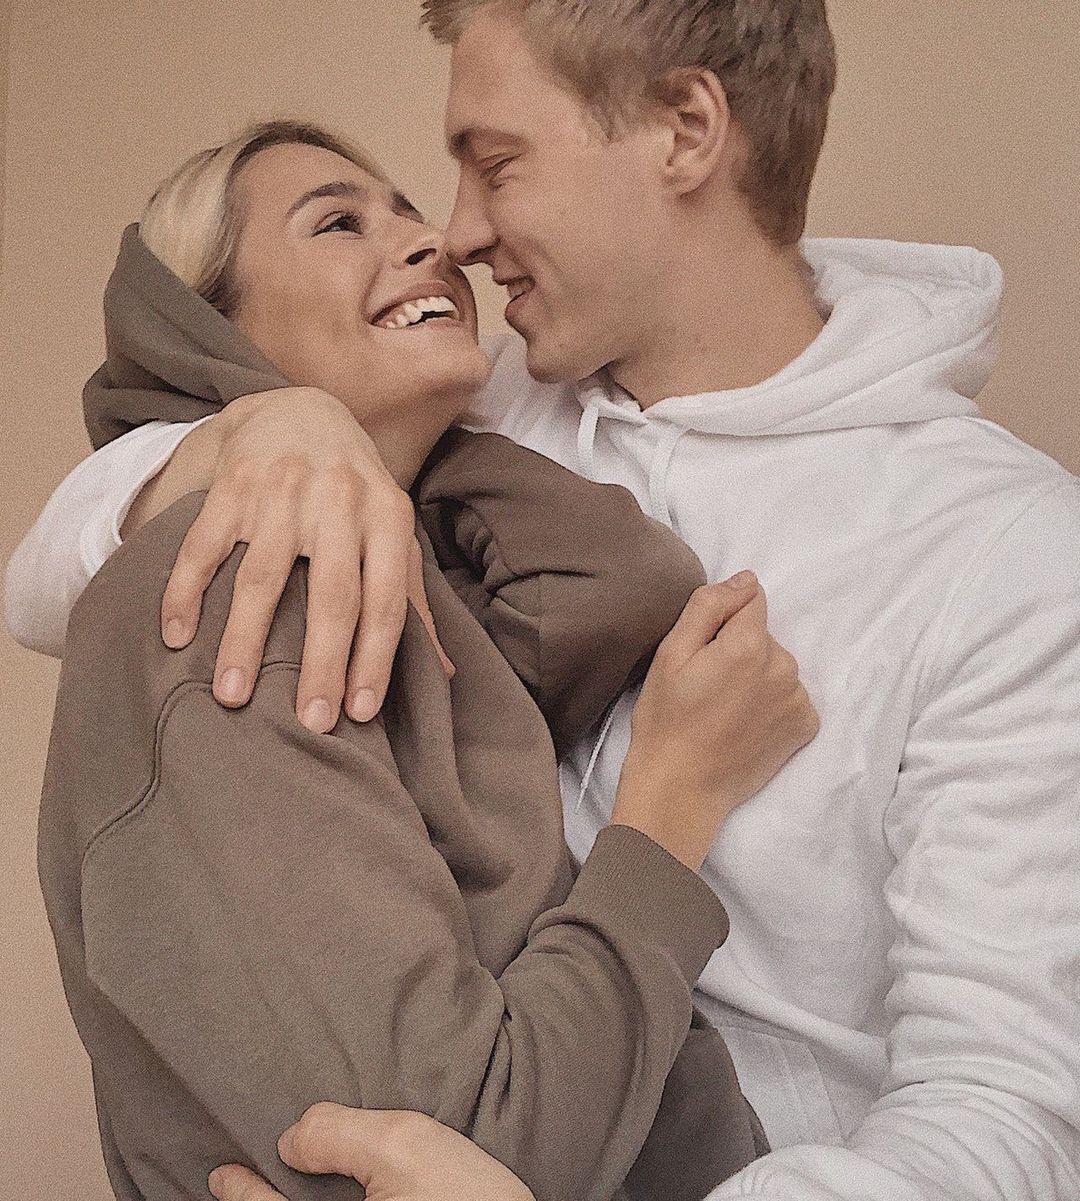 Звезда сериала "Поймать Кайдаша" Григорий Бакланов и актриса Анастасия Цымбалару официально объявили о разводе. Фото пары